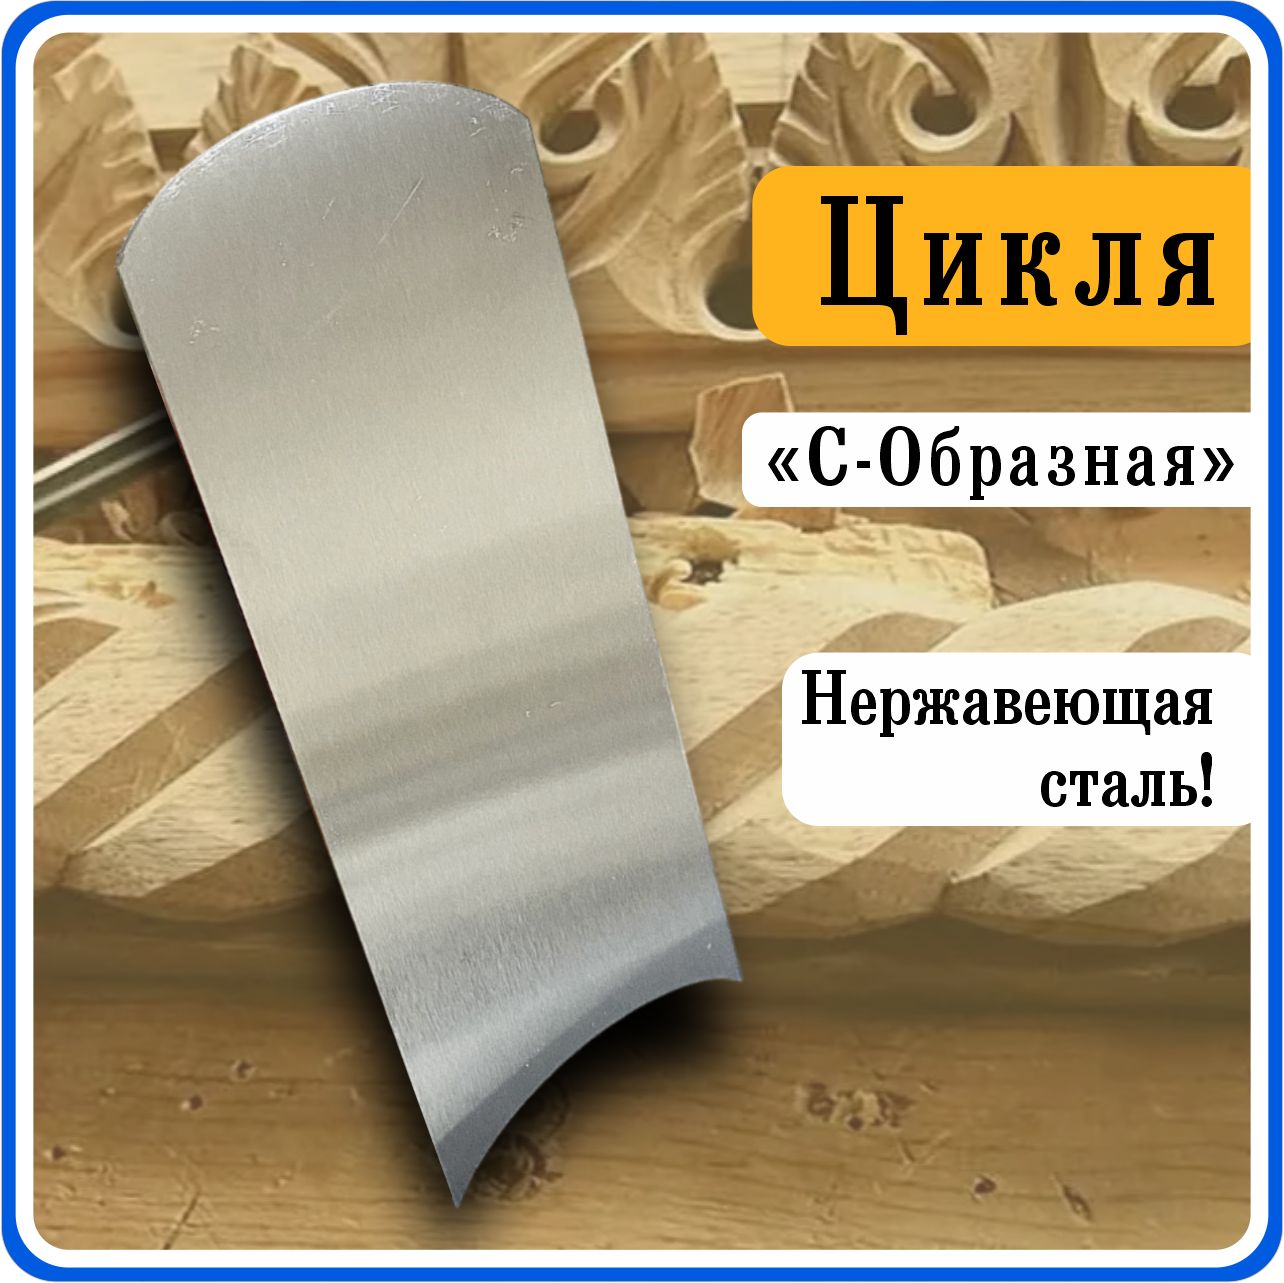 Чем смазывать деревянные лыжи? Лучшая мазь для деревянных лыж, рецепт | promo-sever.ru